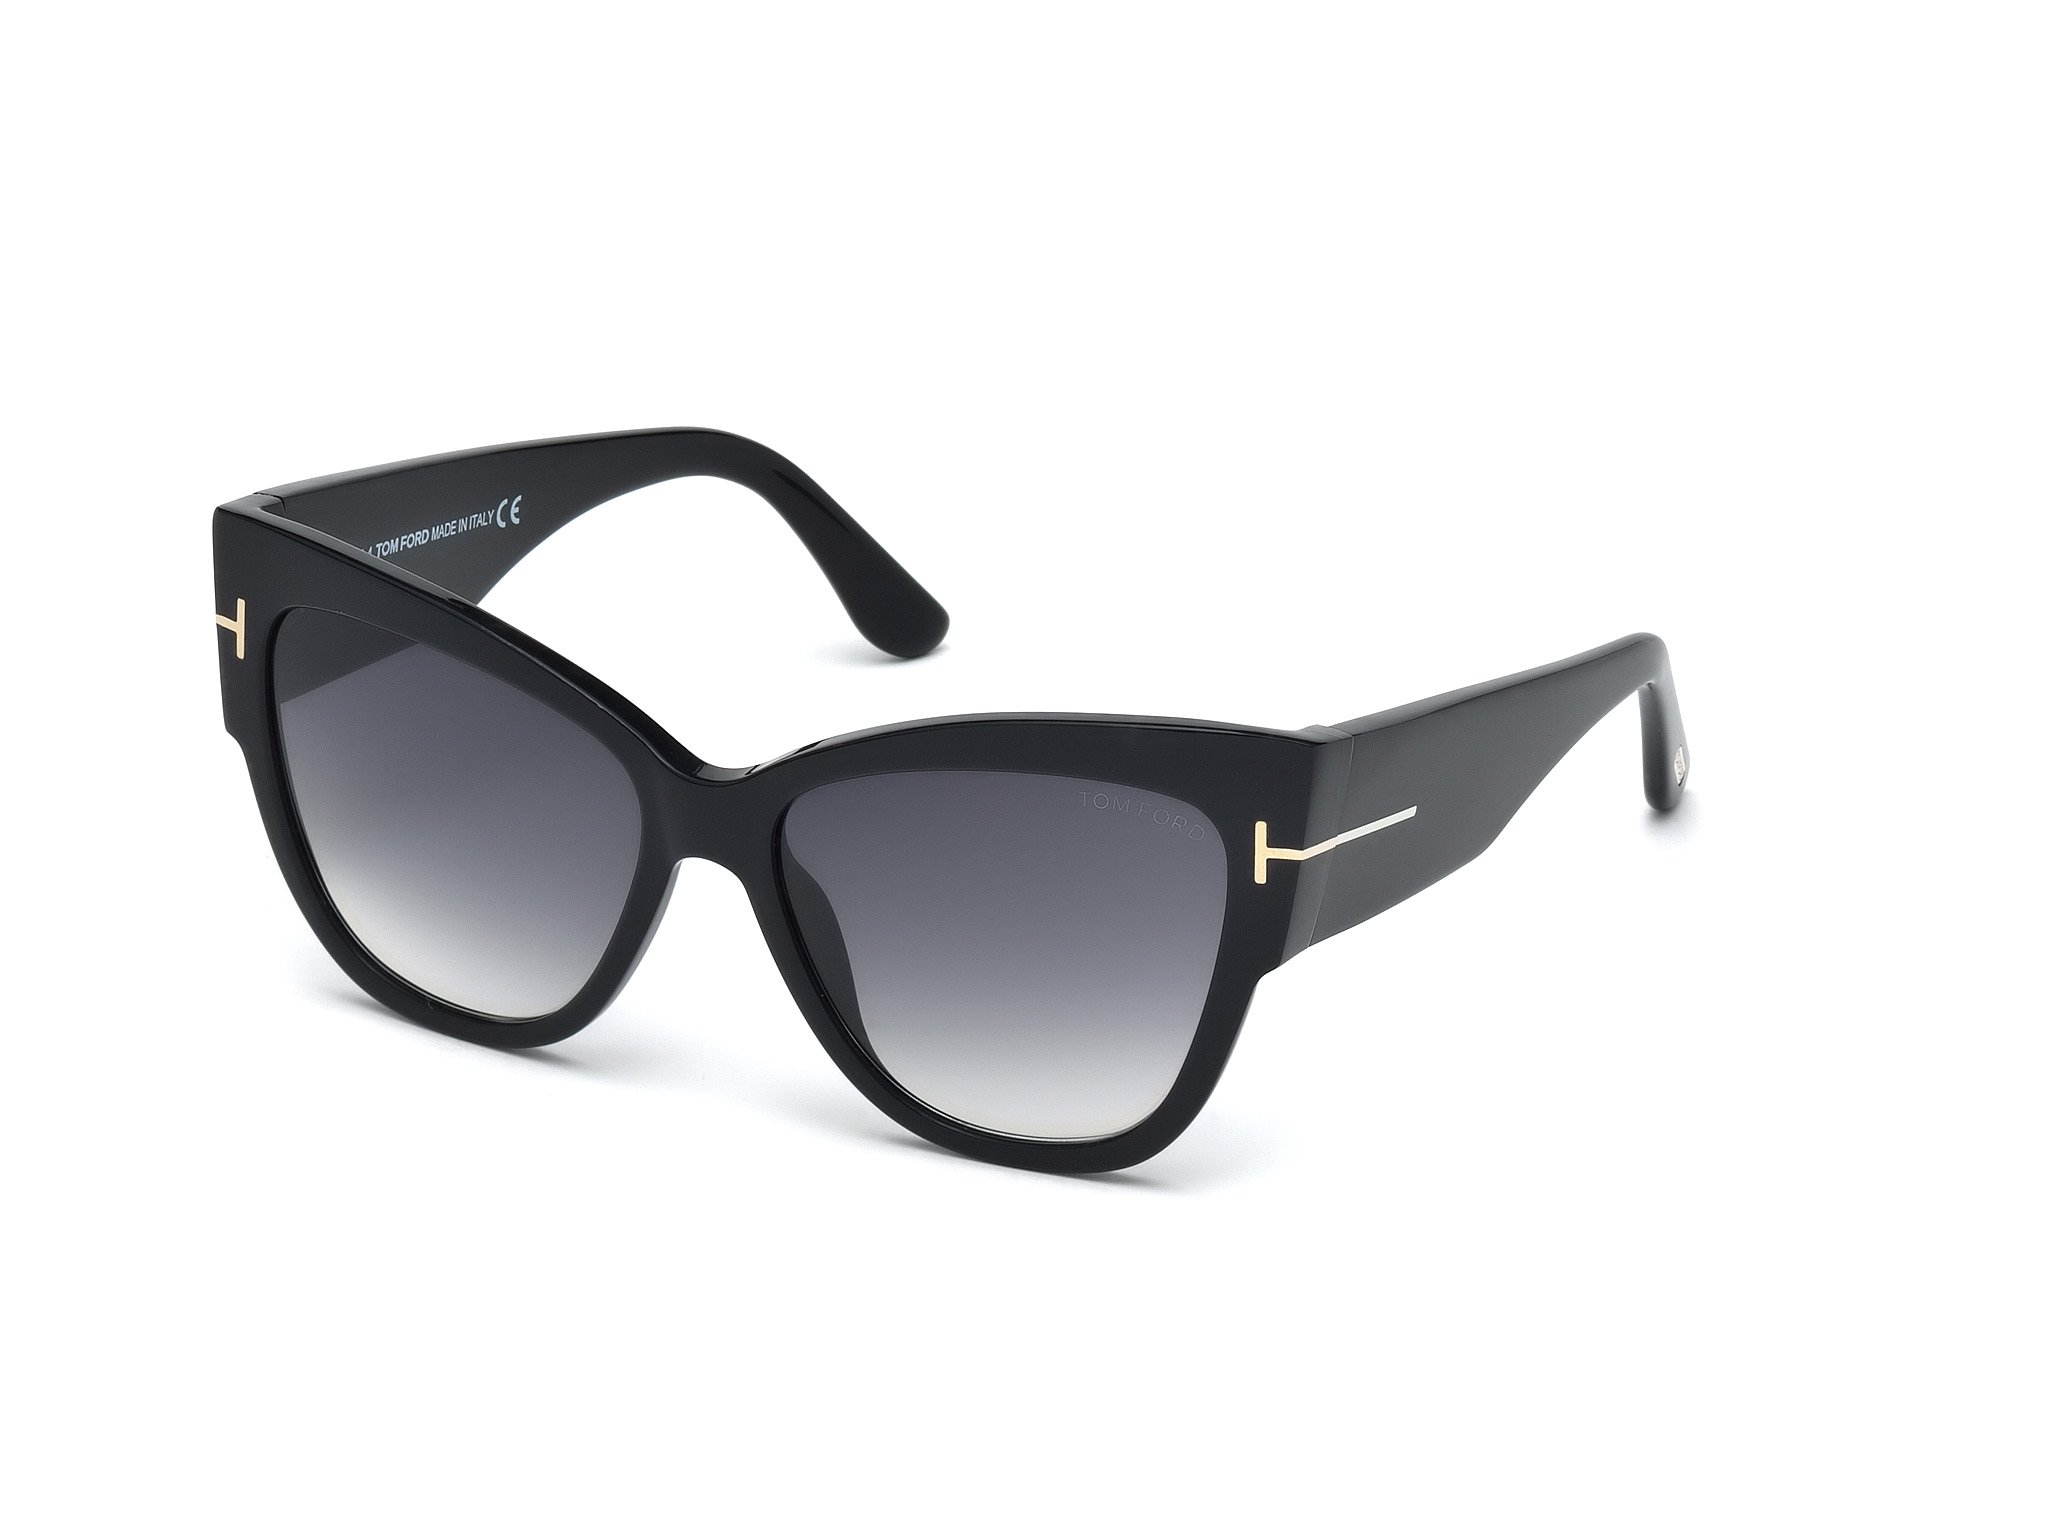 Das Bild zeigt die Sonnenbrille Anoushka FT0371 von der Marke Tom Ford in schwarz